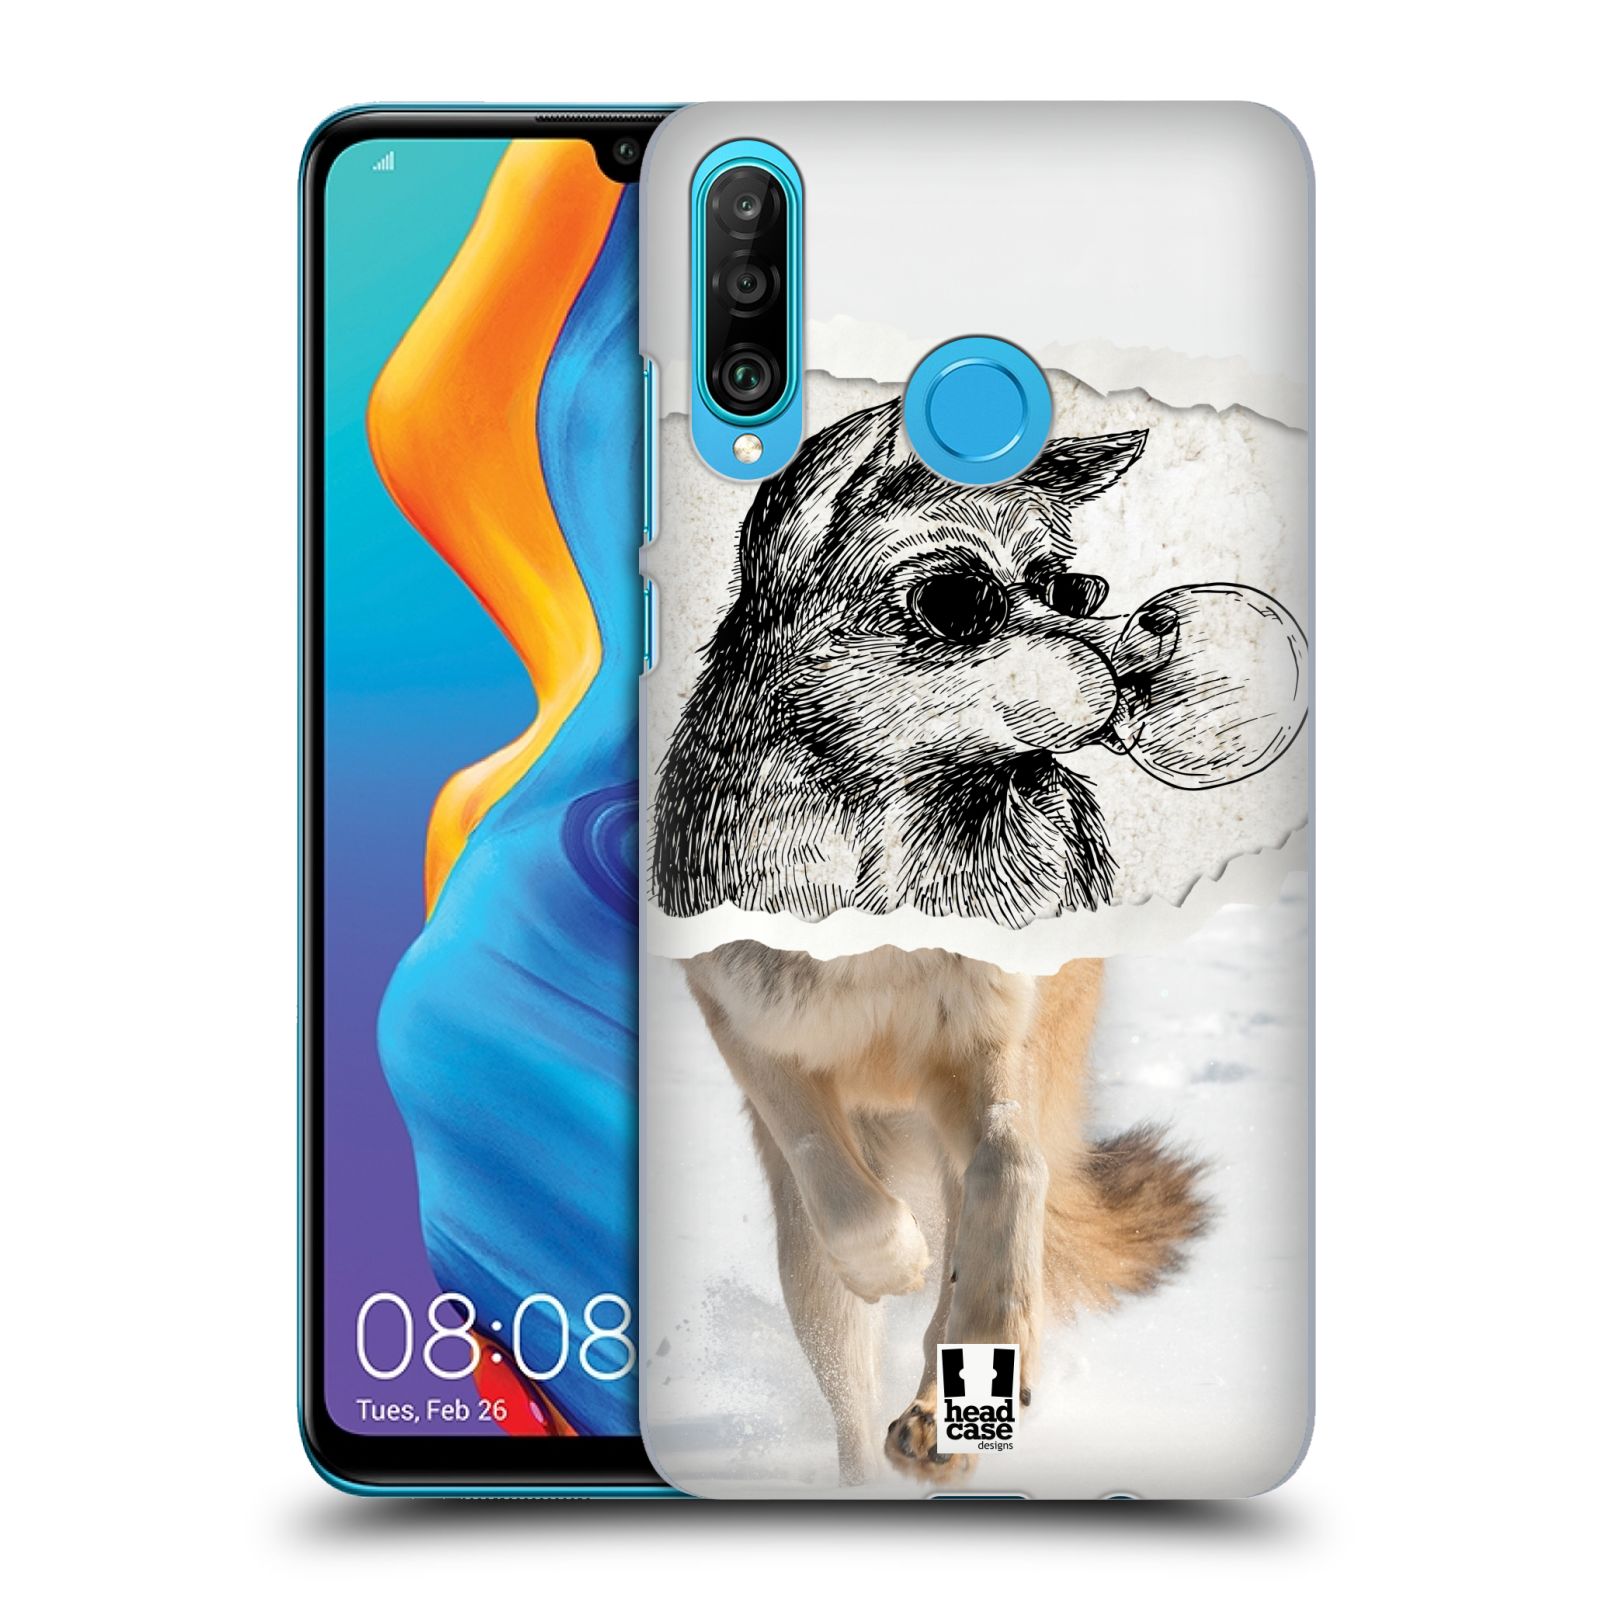 Pouzdro na mobil Huawei P30 LITE - HEAD CASE - vzor zvířata koláž vlk pohodář